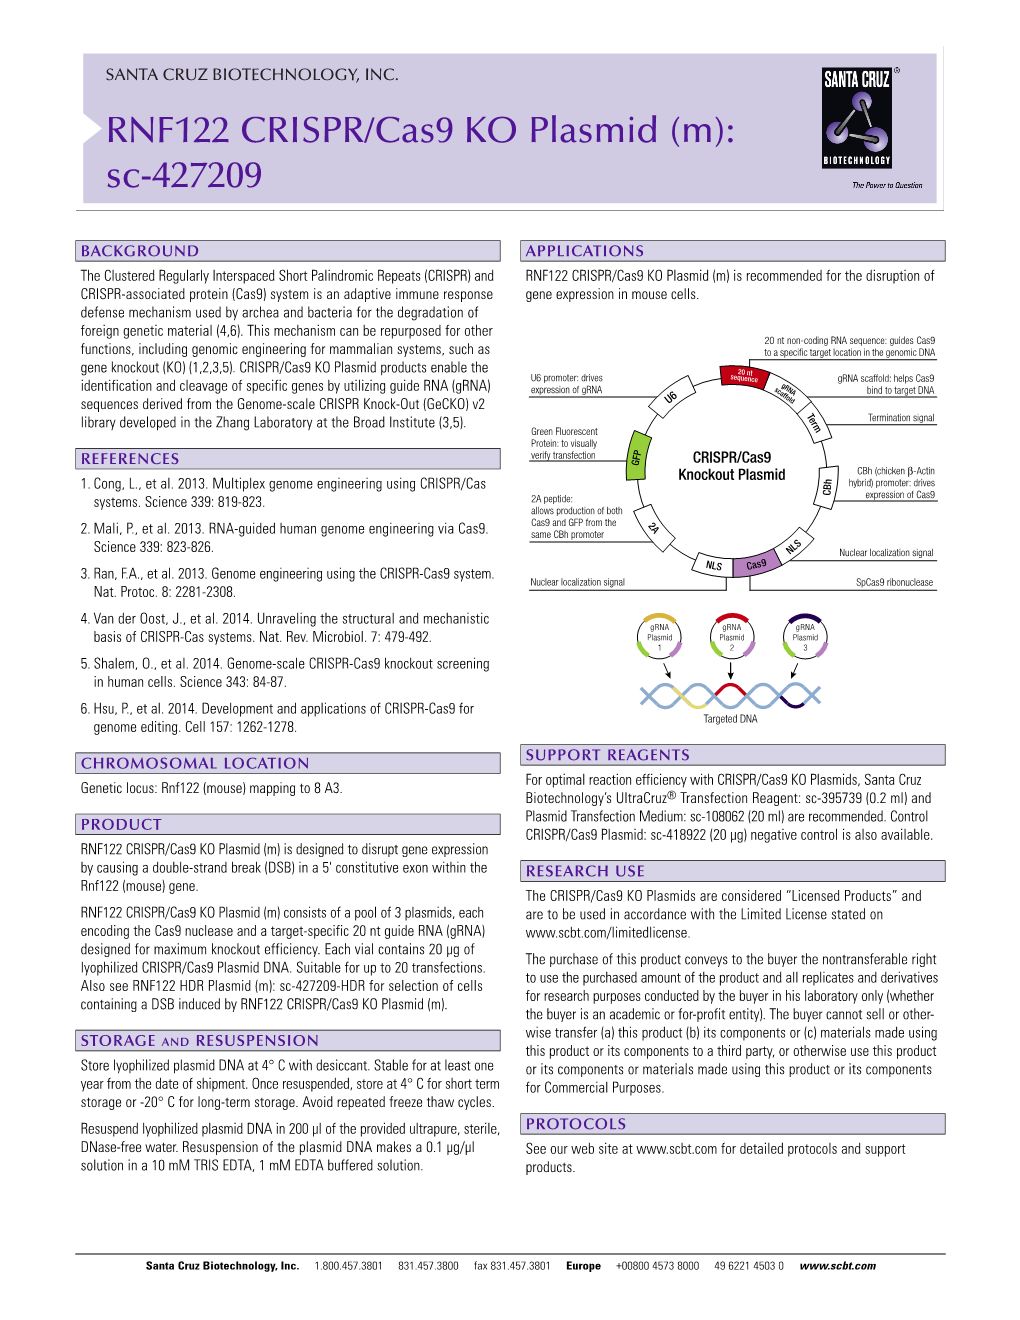 RNF122 CRISPR/Cas9 KO Plasmid (M): Sc-427209